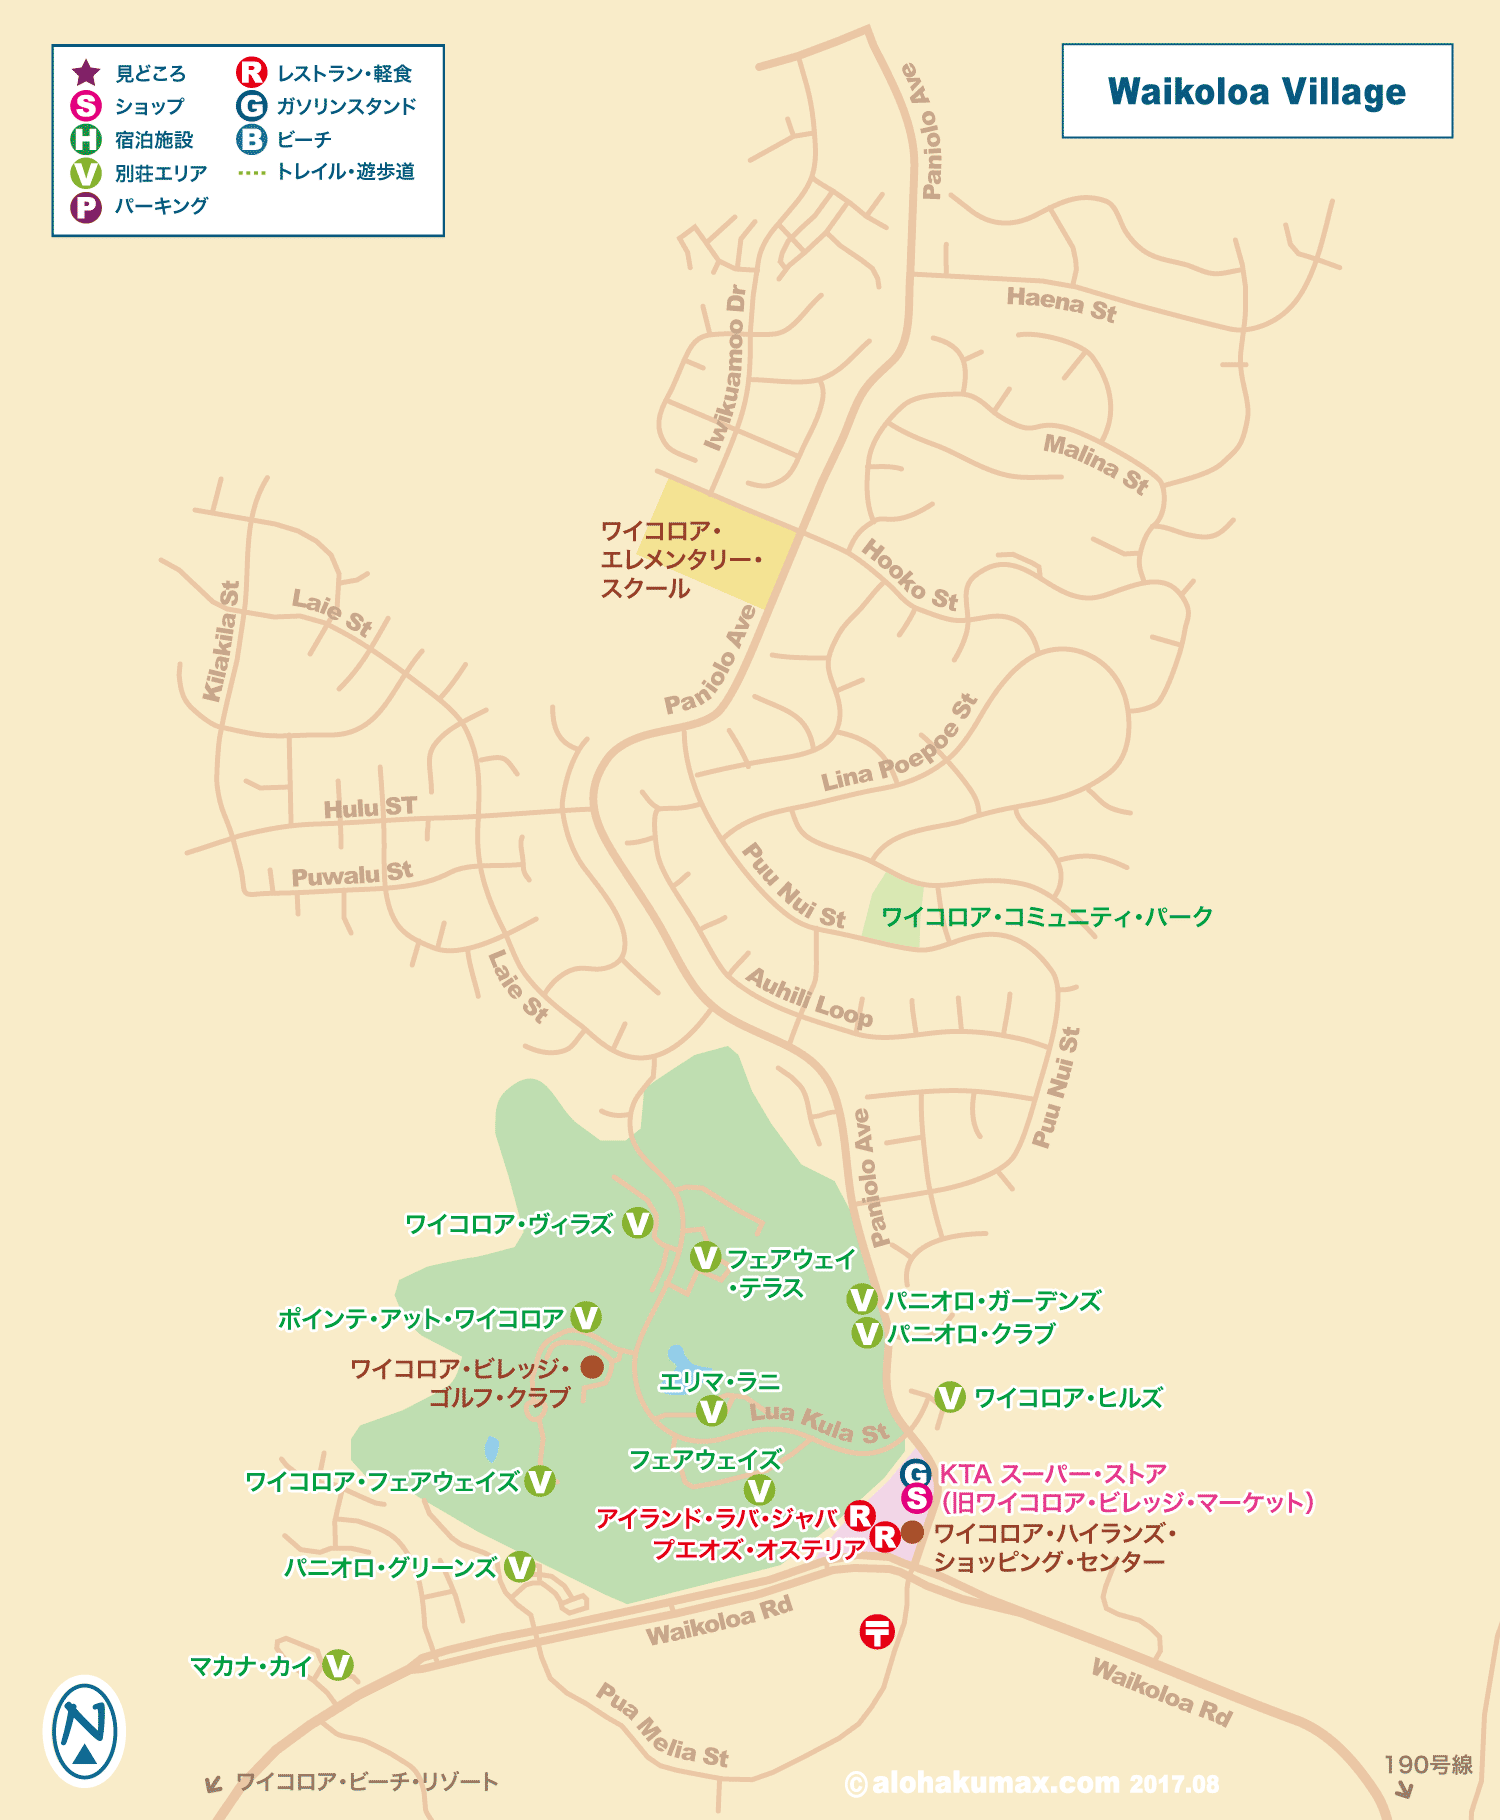 ワイコロアビレッジ 地図